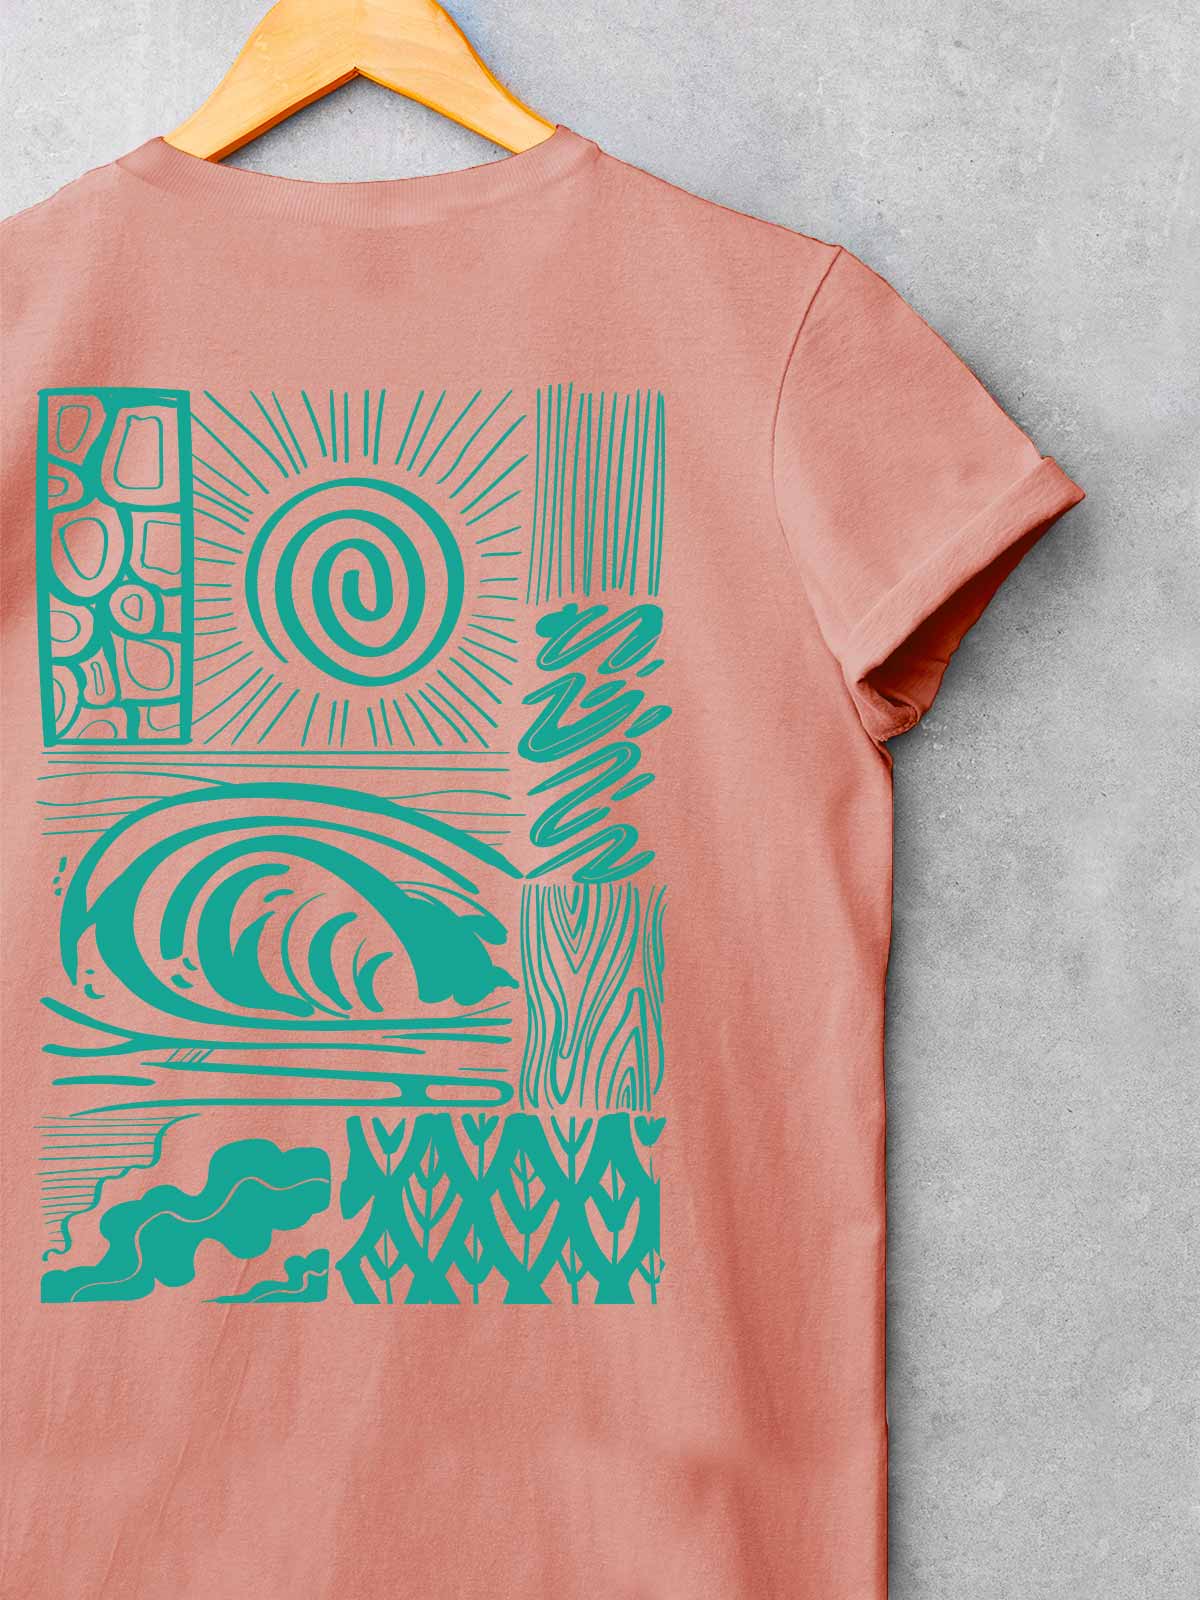 Wander-backprint-t-shirt-for-men by Ghumakkad